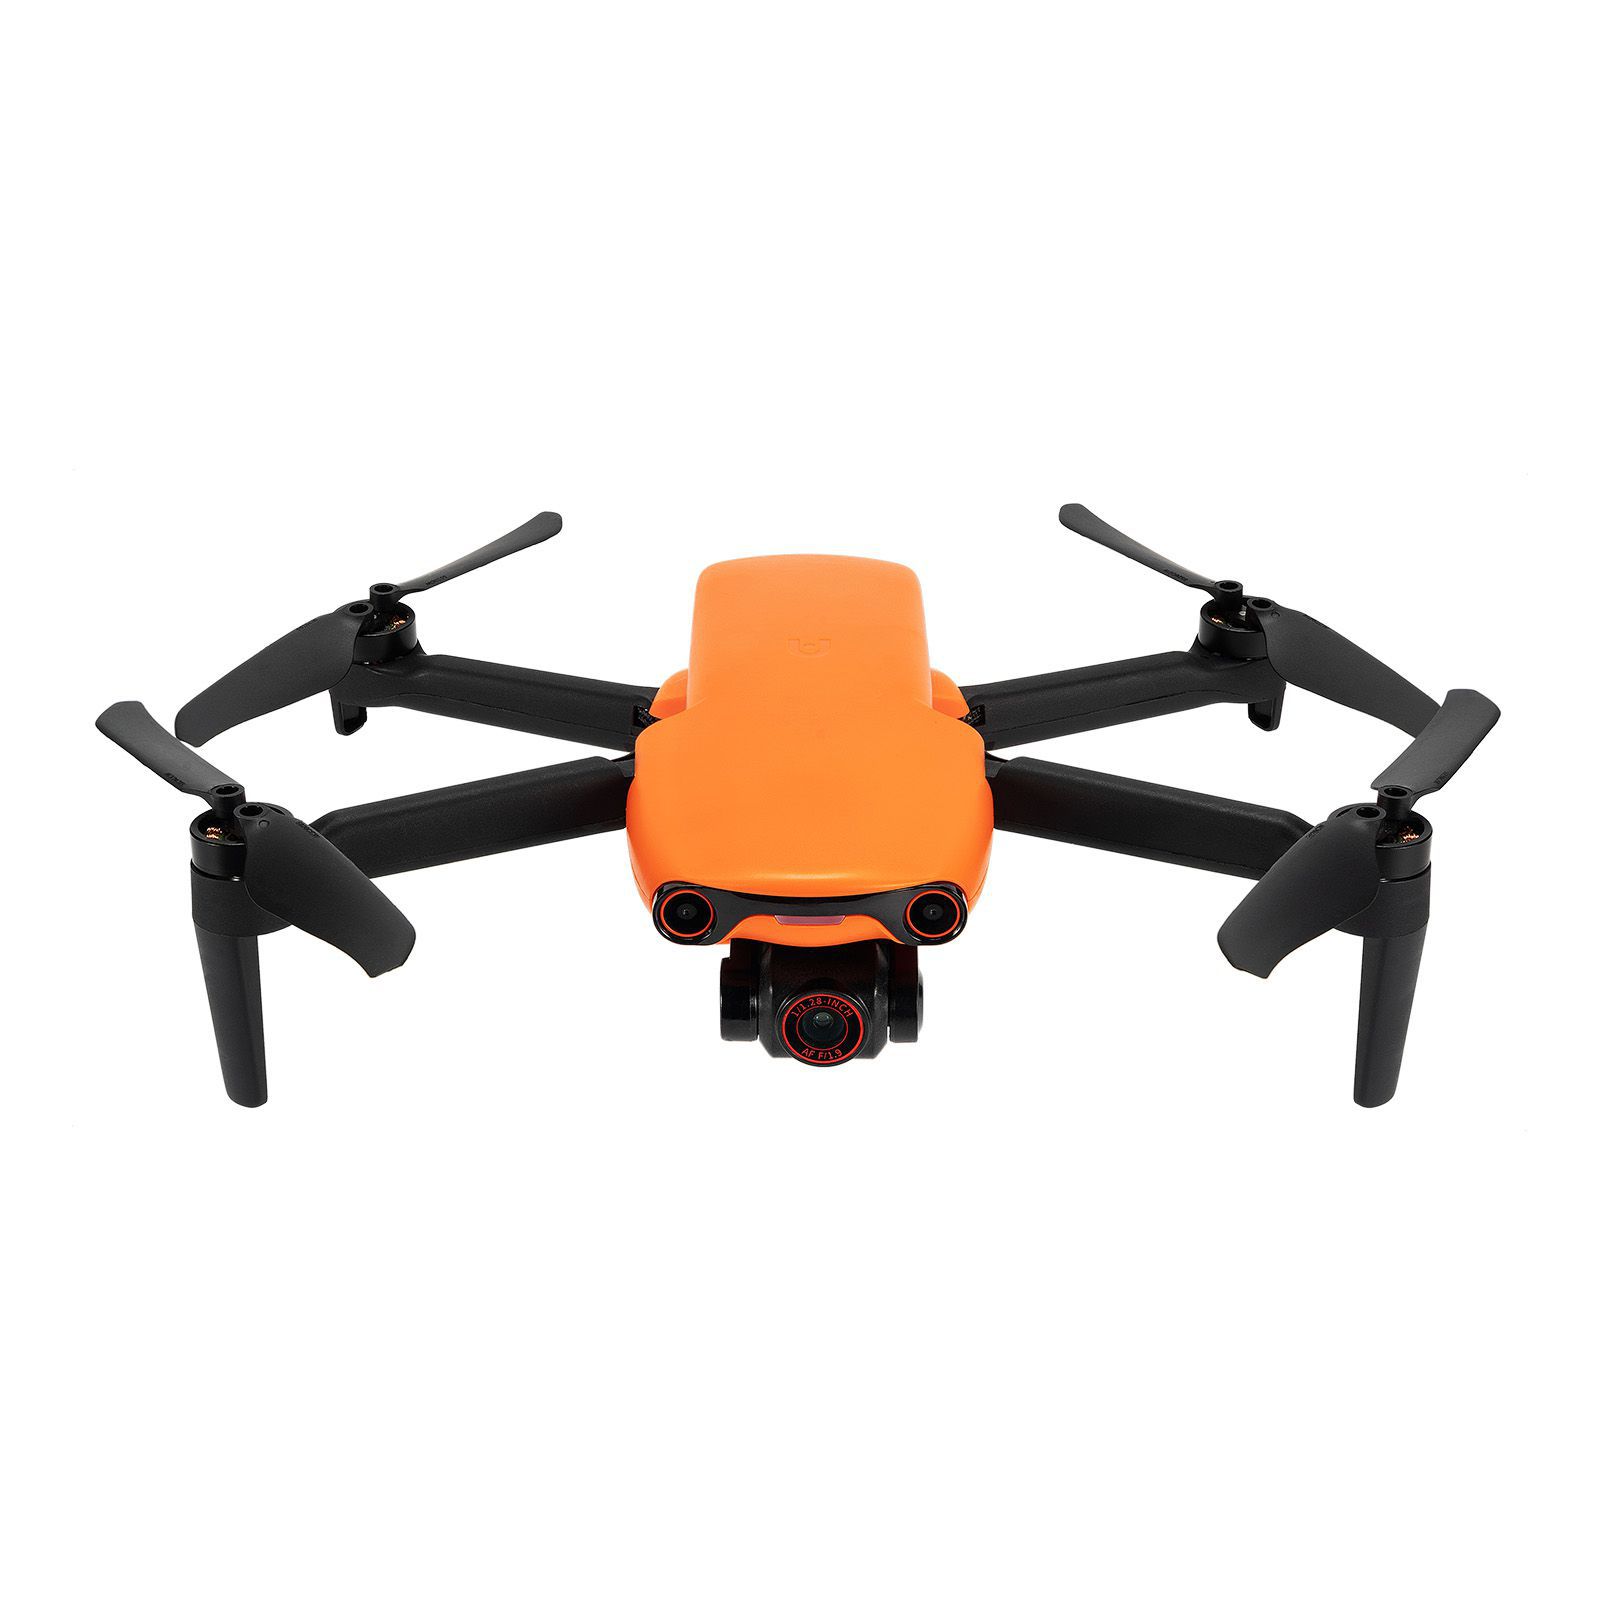 Autel Robotics Evo Nano + drone 249g avec Premium bundle 1 / 1.28 pouces capteur CMOS 4K caméra drone Mini drone